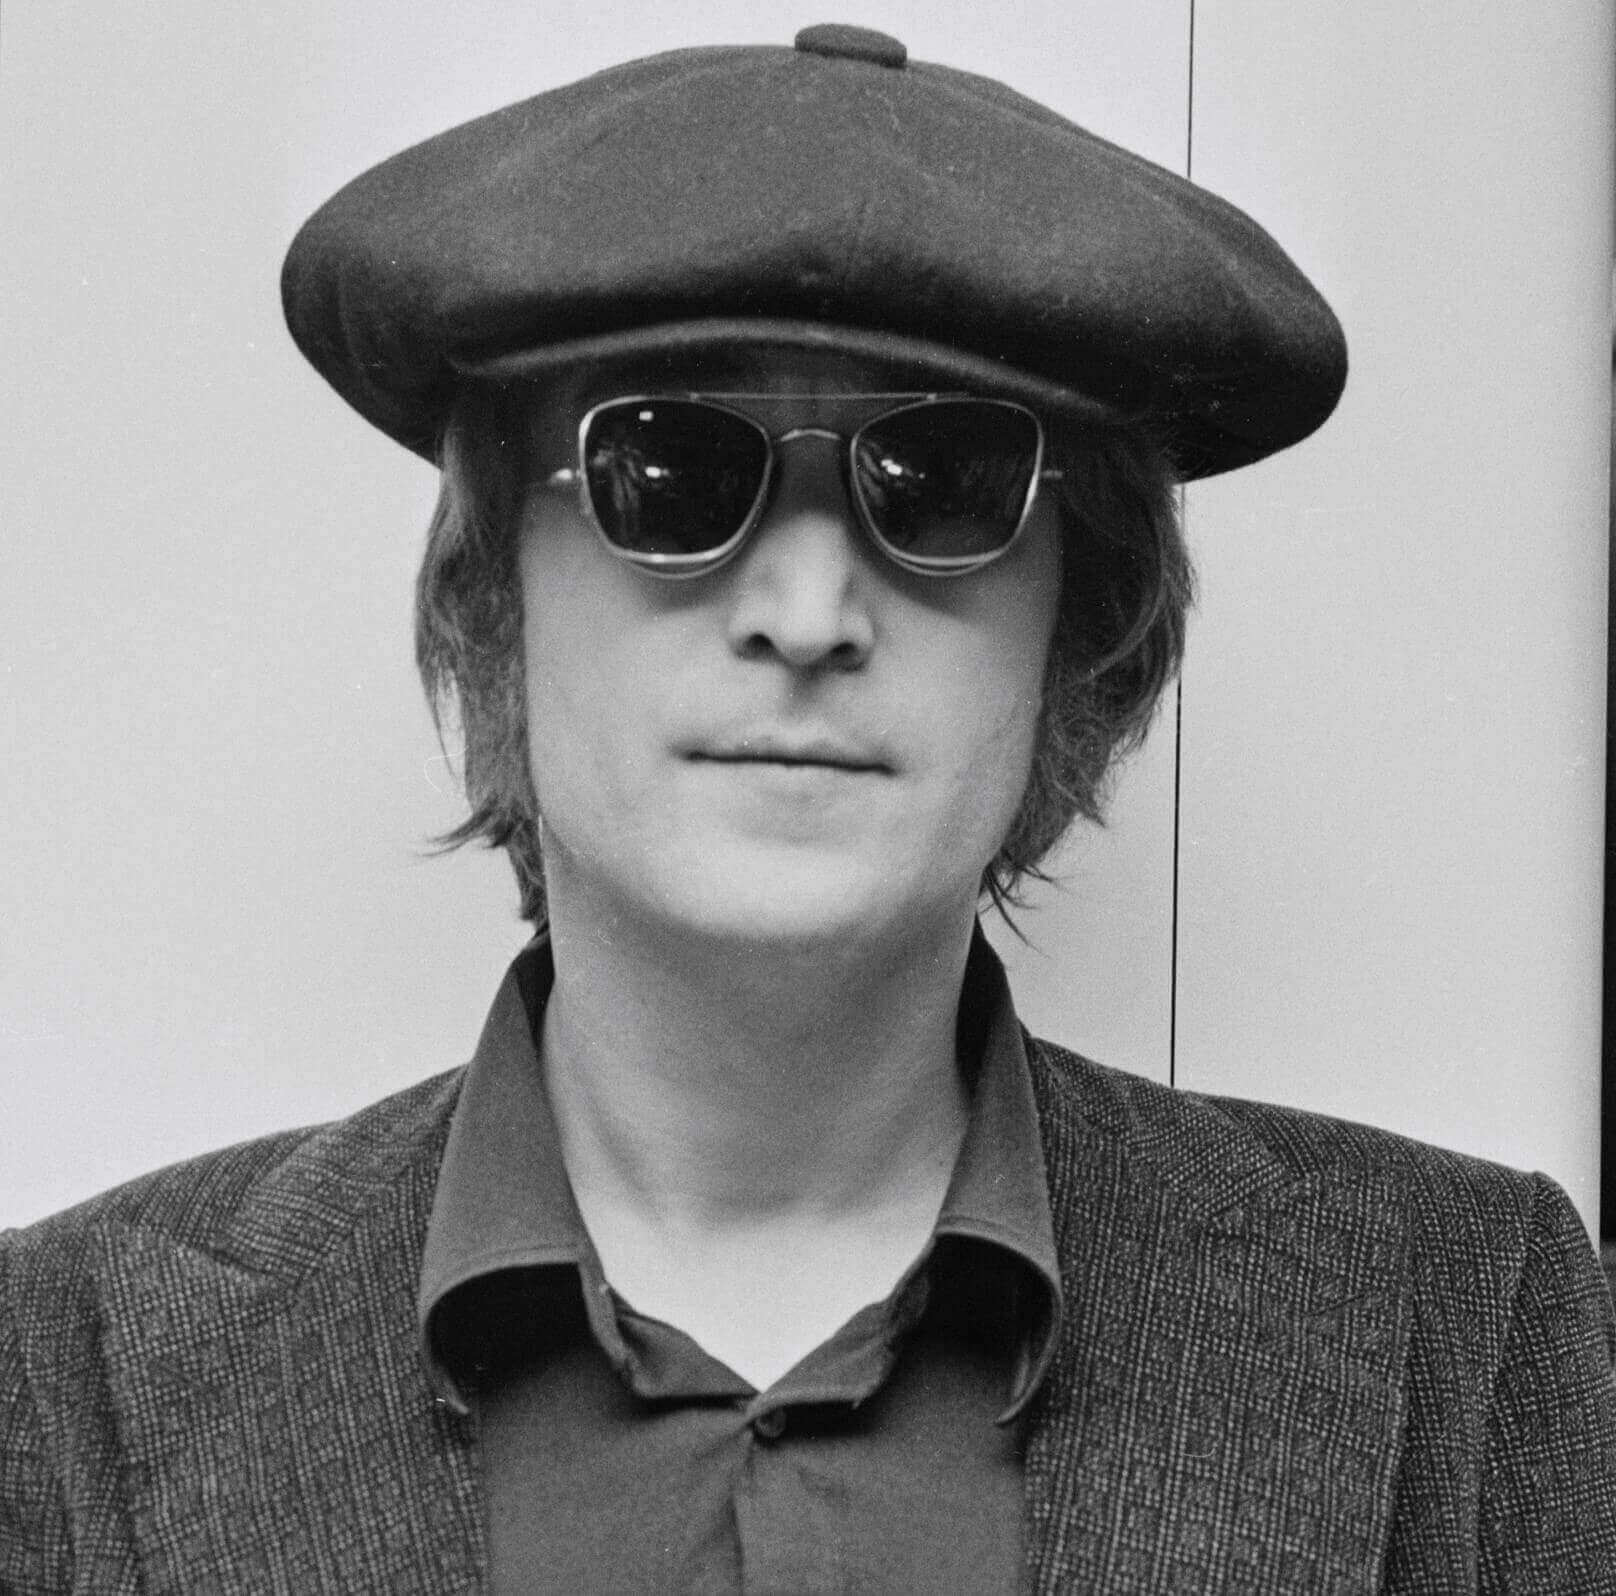 "Woman" singer John Lennon wearing a beret